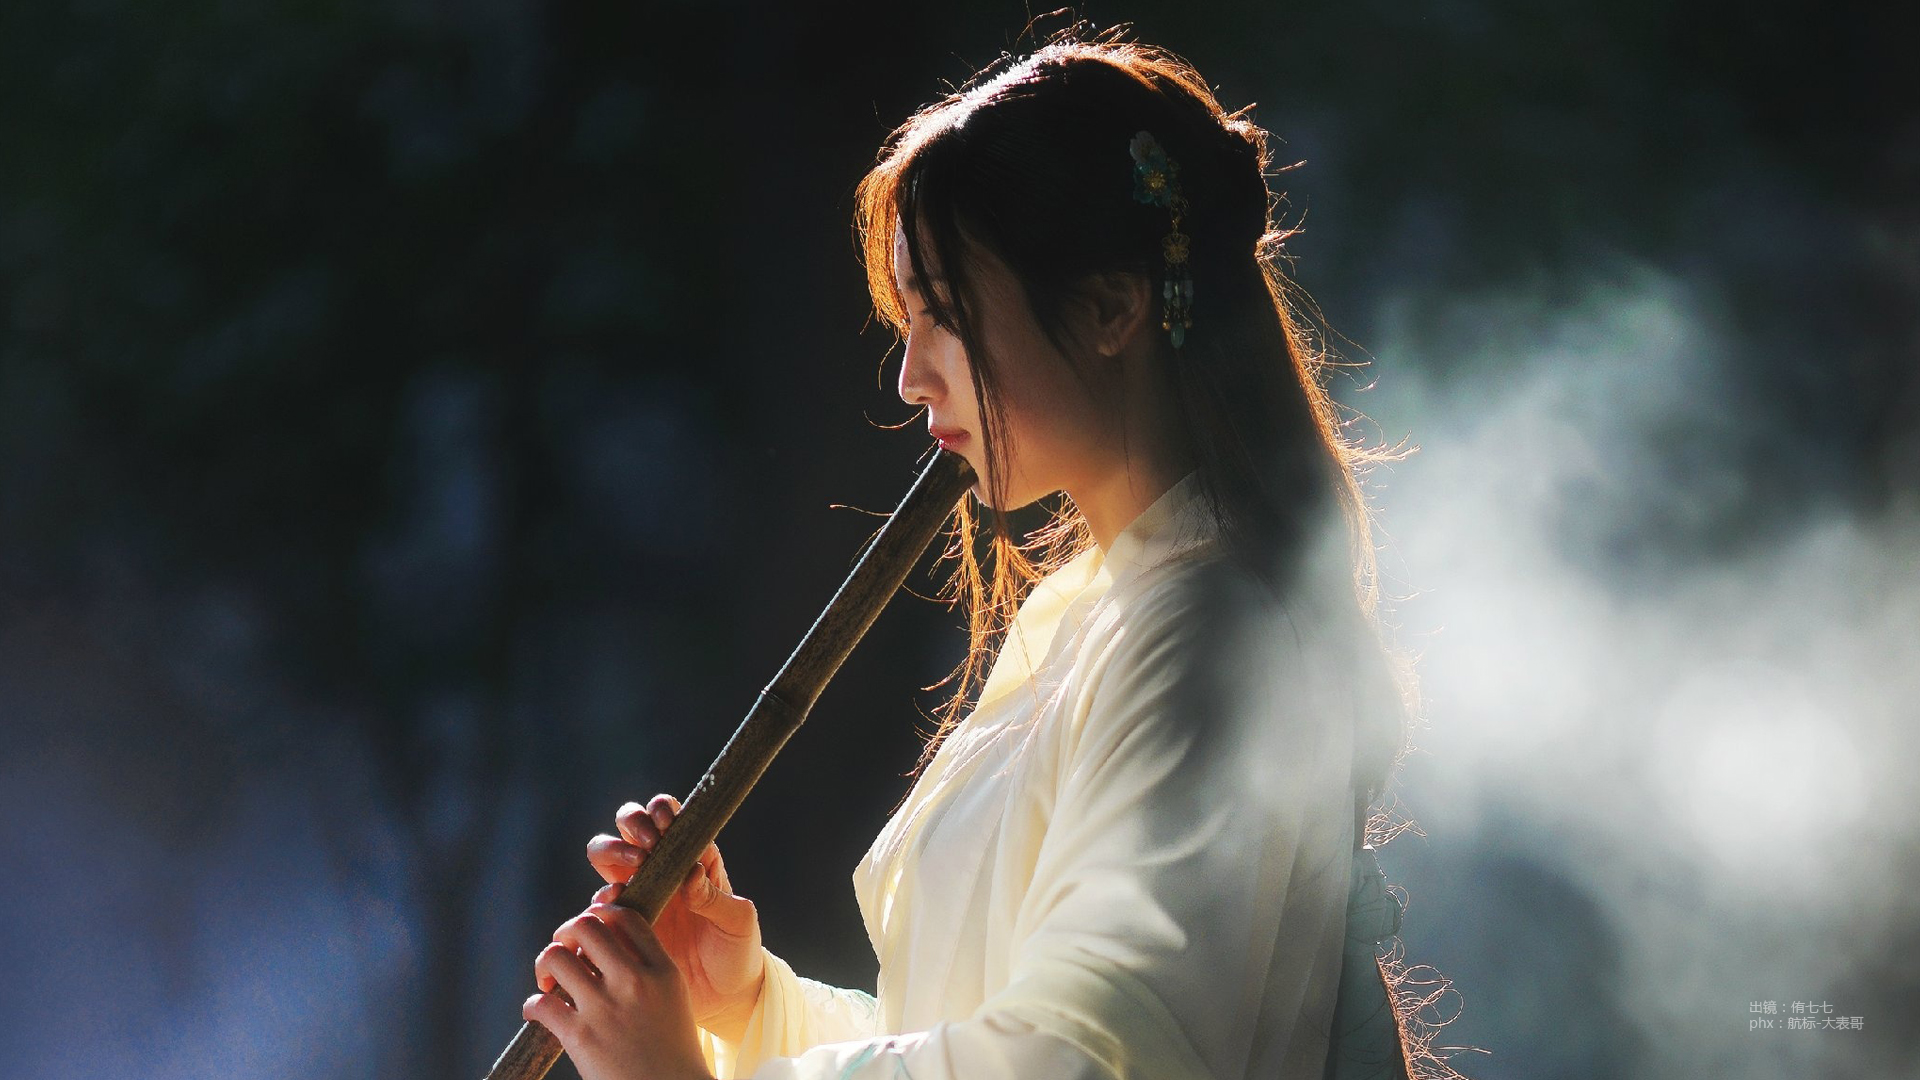 People 1920x1080 Asian women flute musical instrument smoke long hair long sleeves watermarked standing backlighting dark hair